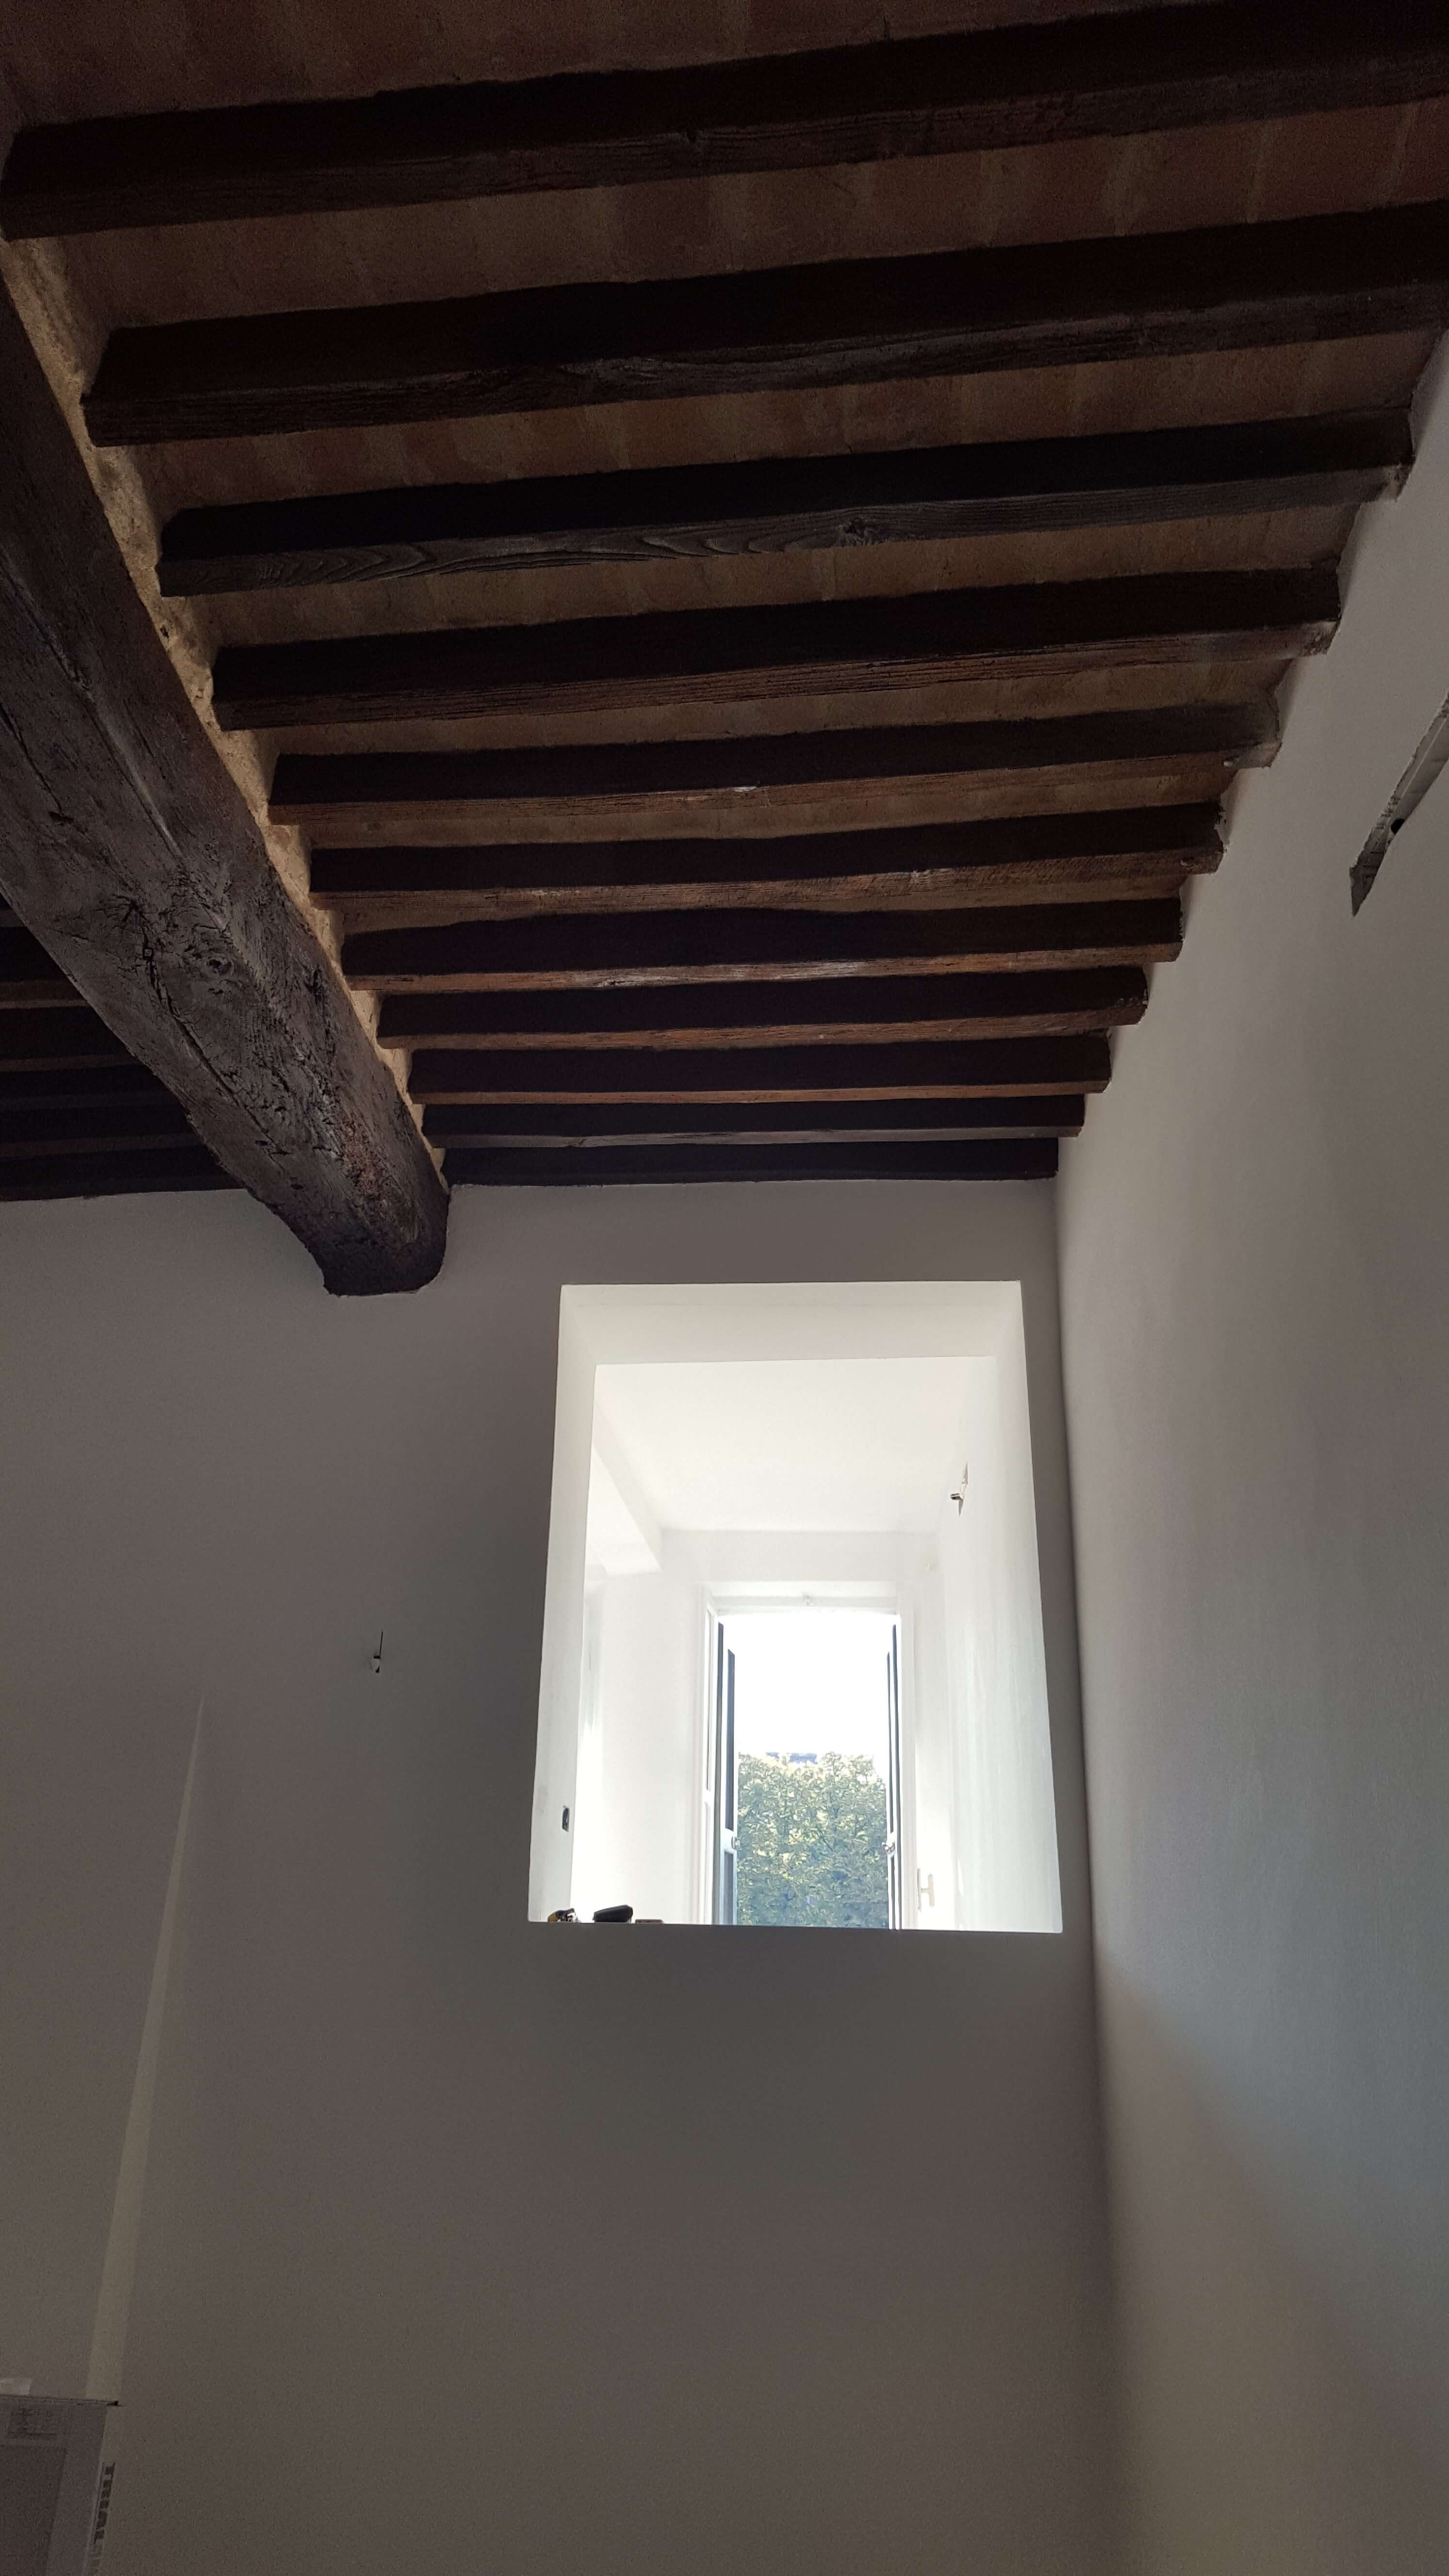 Ristrutturazione edilizia per appartamenti a Parma - via bixio - dettaglio su travi e punti luce - 2